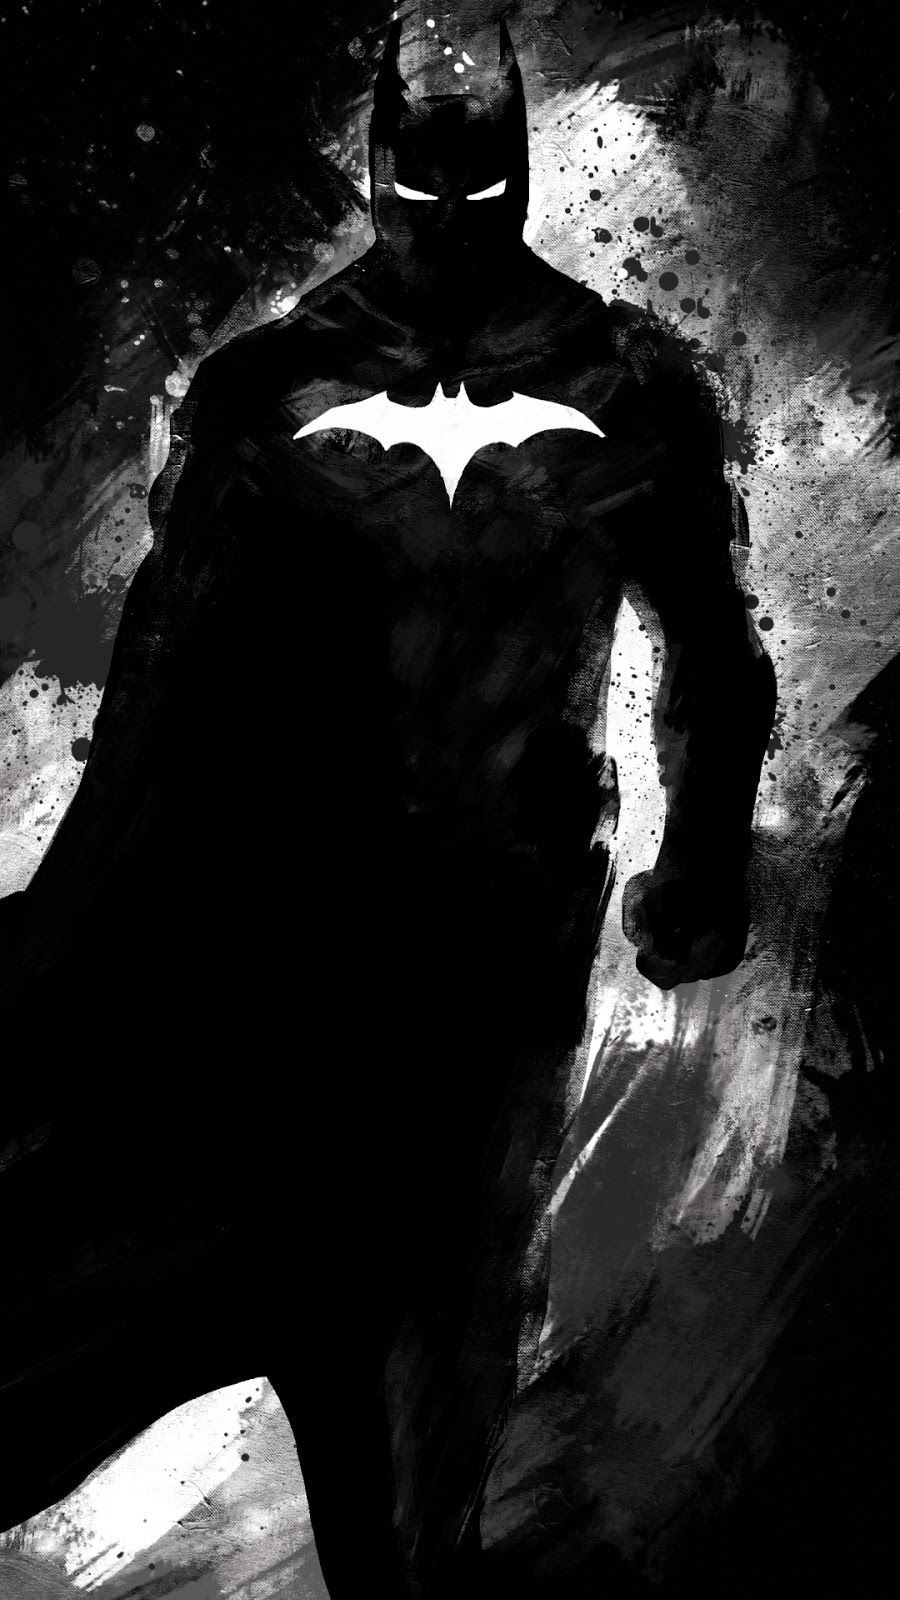  Batman Hintergrundbild 900x1600. Batman Digital Art Black & White Mobile Wallpaper. Batman wallpaper, Fondos de pantalla batman, Logotipo de batman